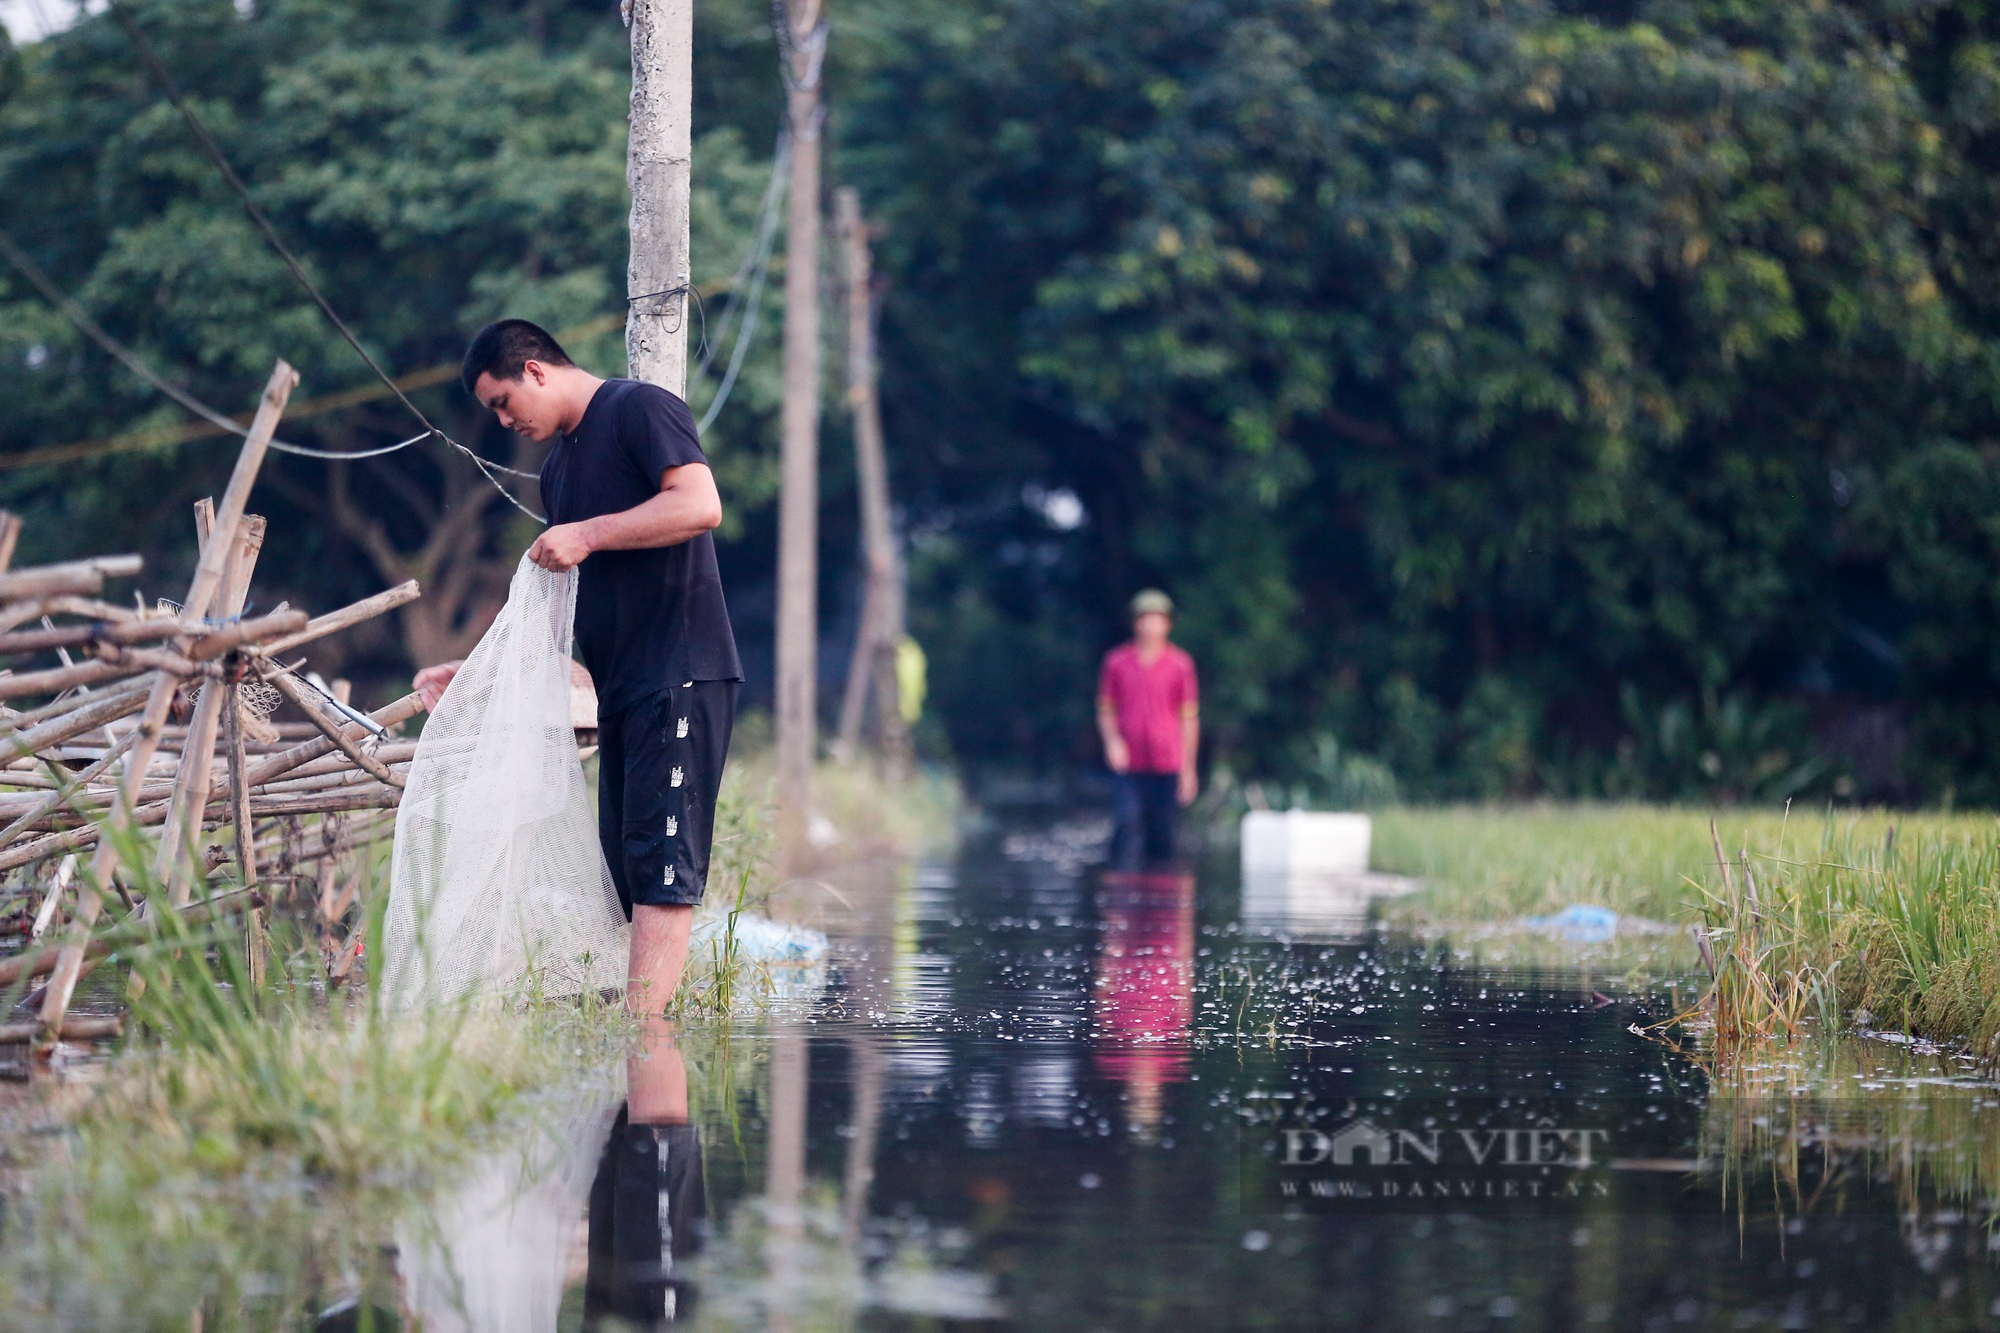 Nông dân ngoại thành Hà Nội khốn khổ vì nước ngập tàn phá hoa màu 4 ngày không rút - Ảnh 12.